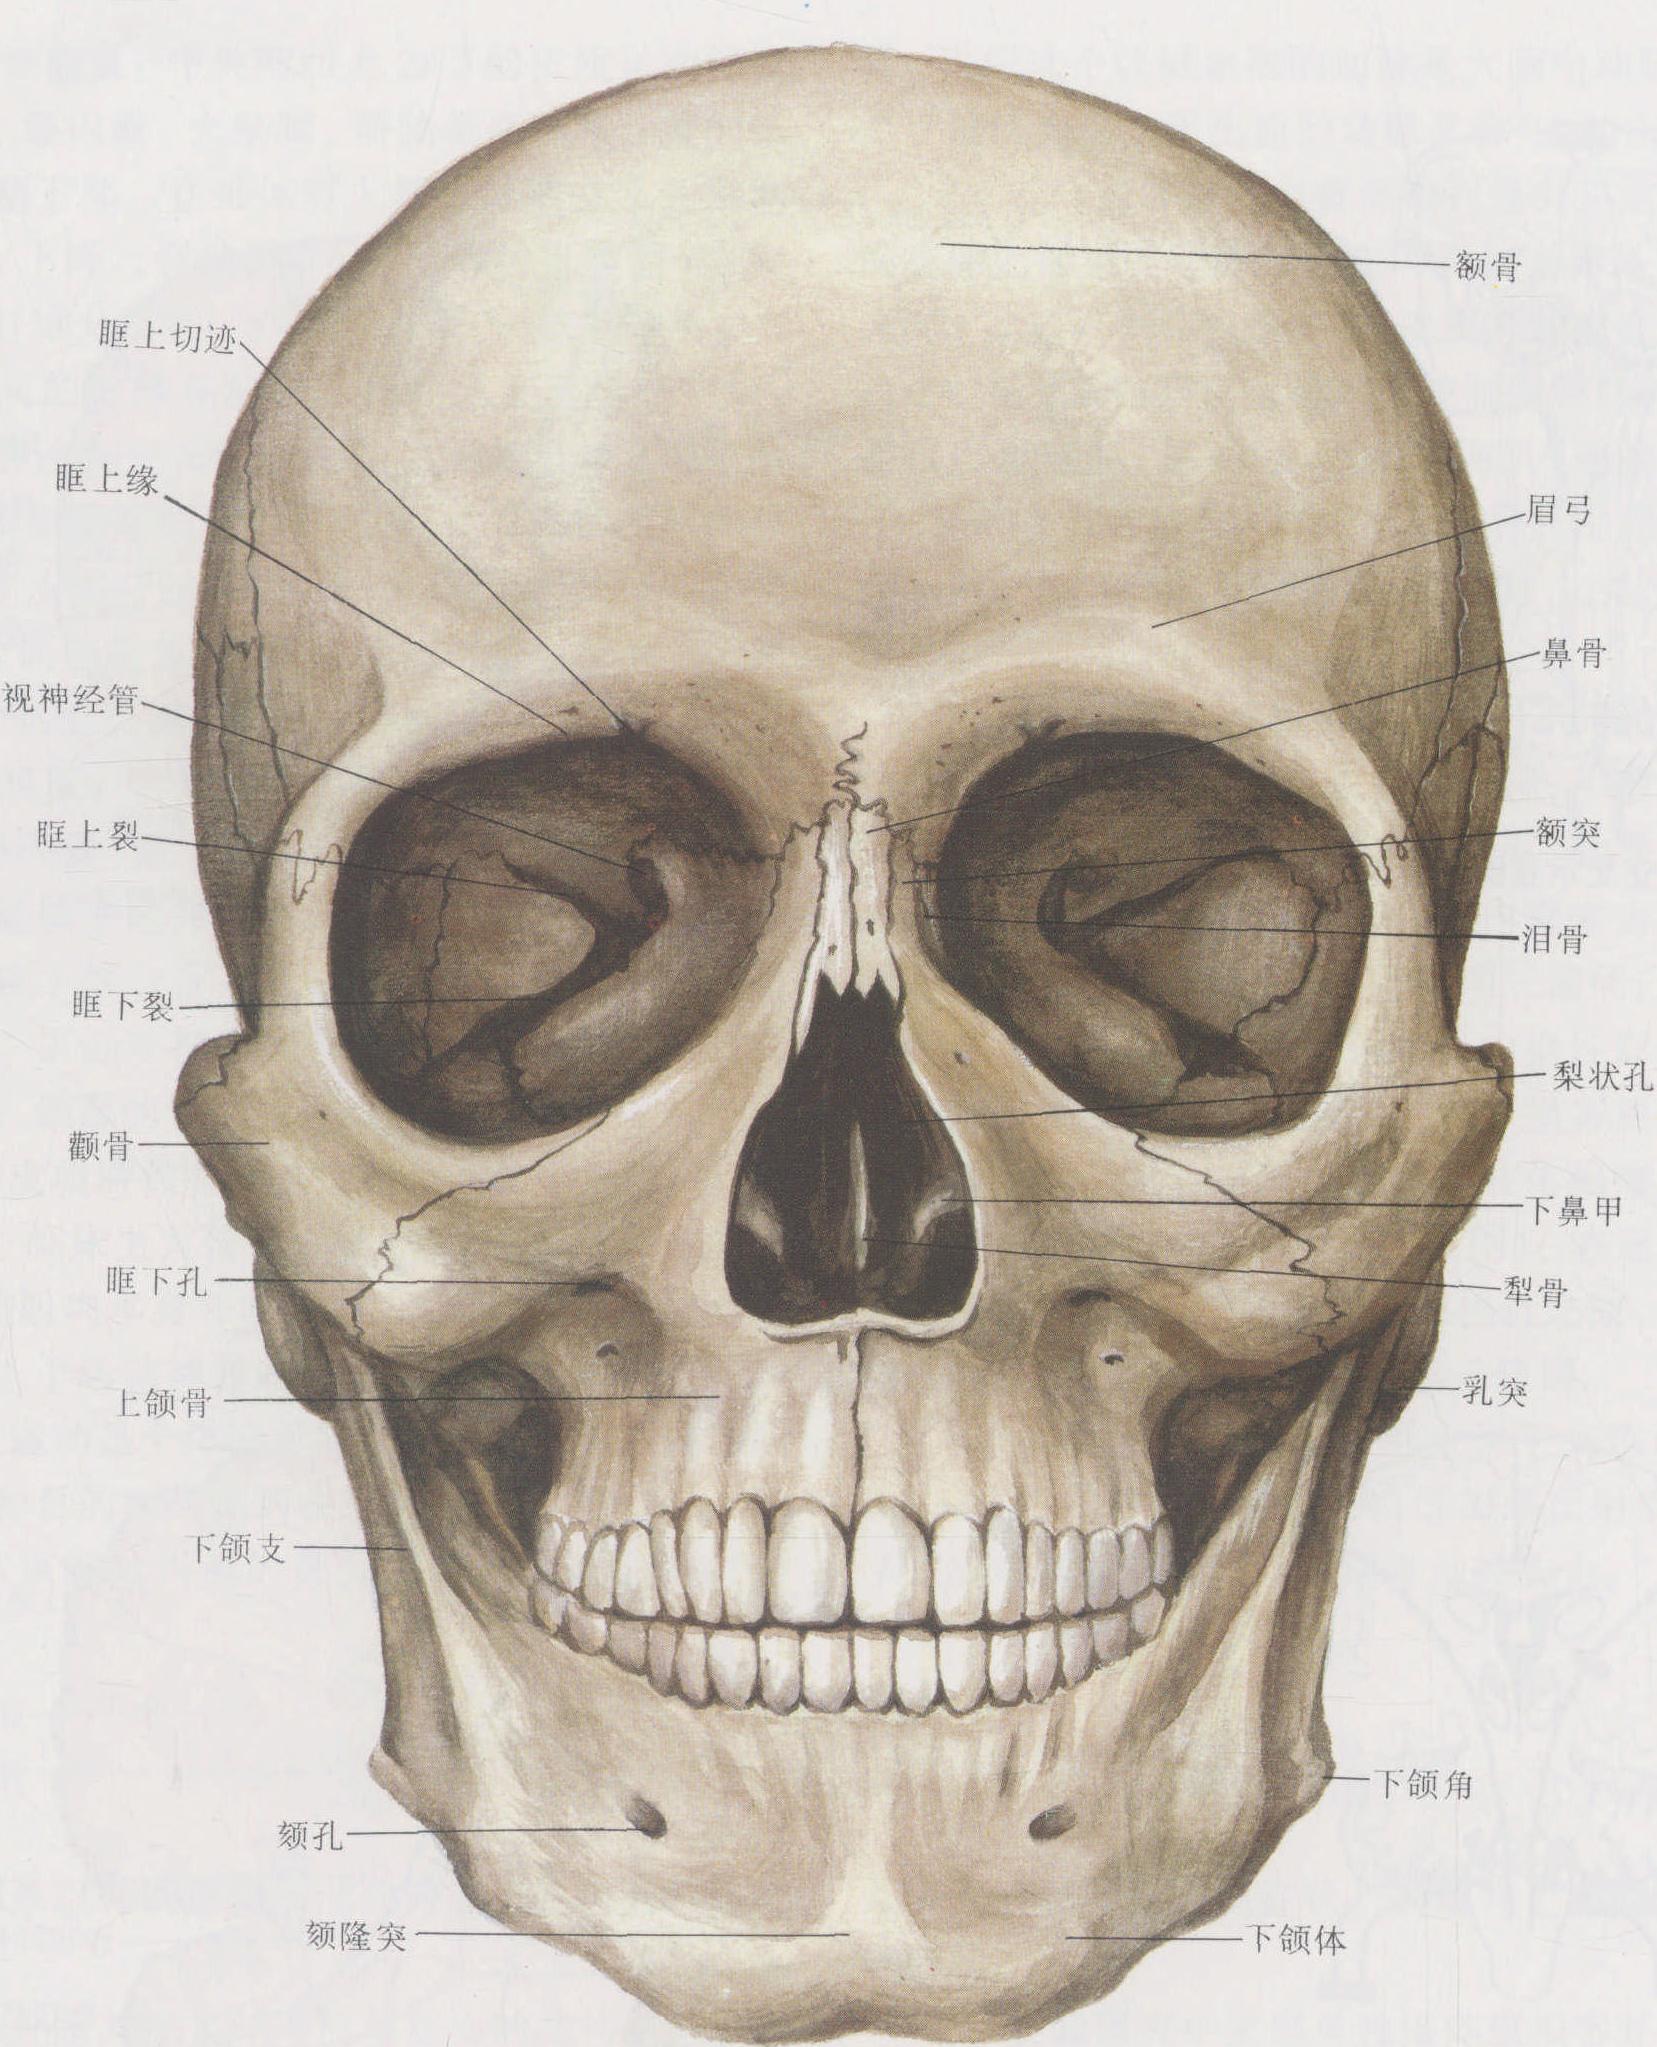 1例鼻穿透伤致前颅底骨折伴脑脊液漏报道 - 脑医汇 - 神外资讯 - 神介资讯